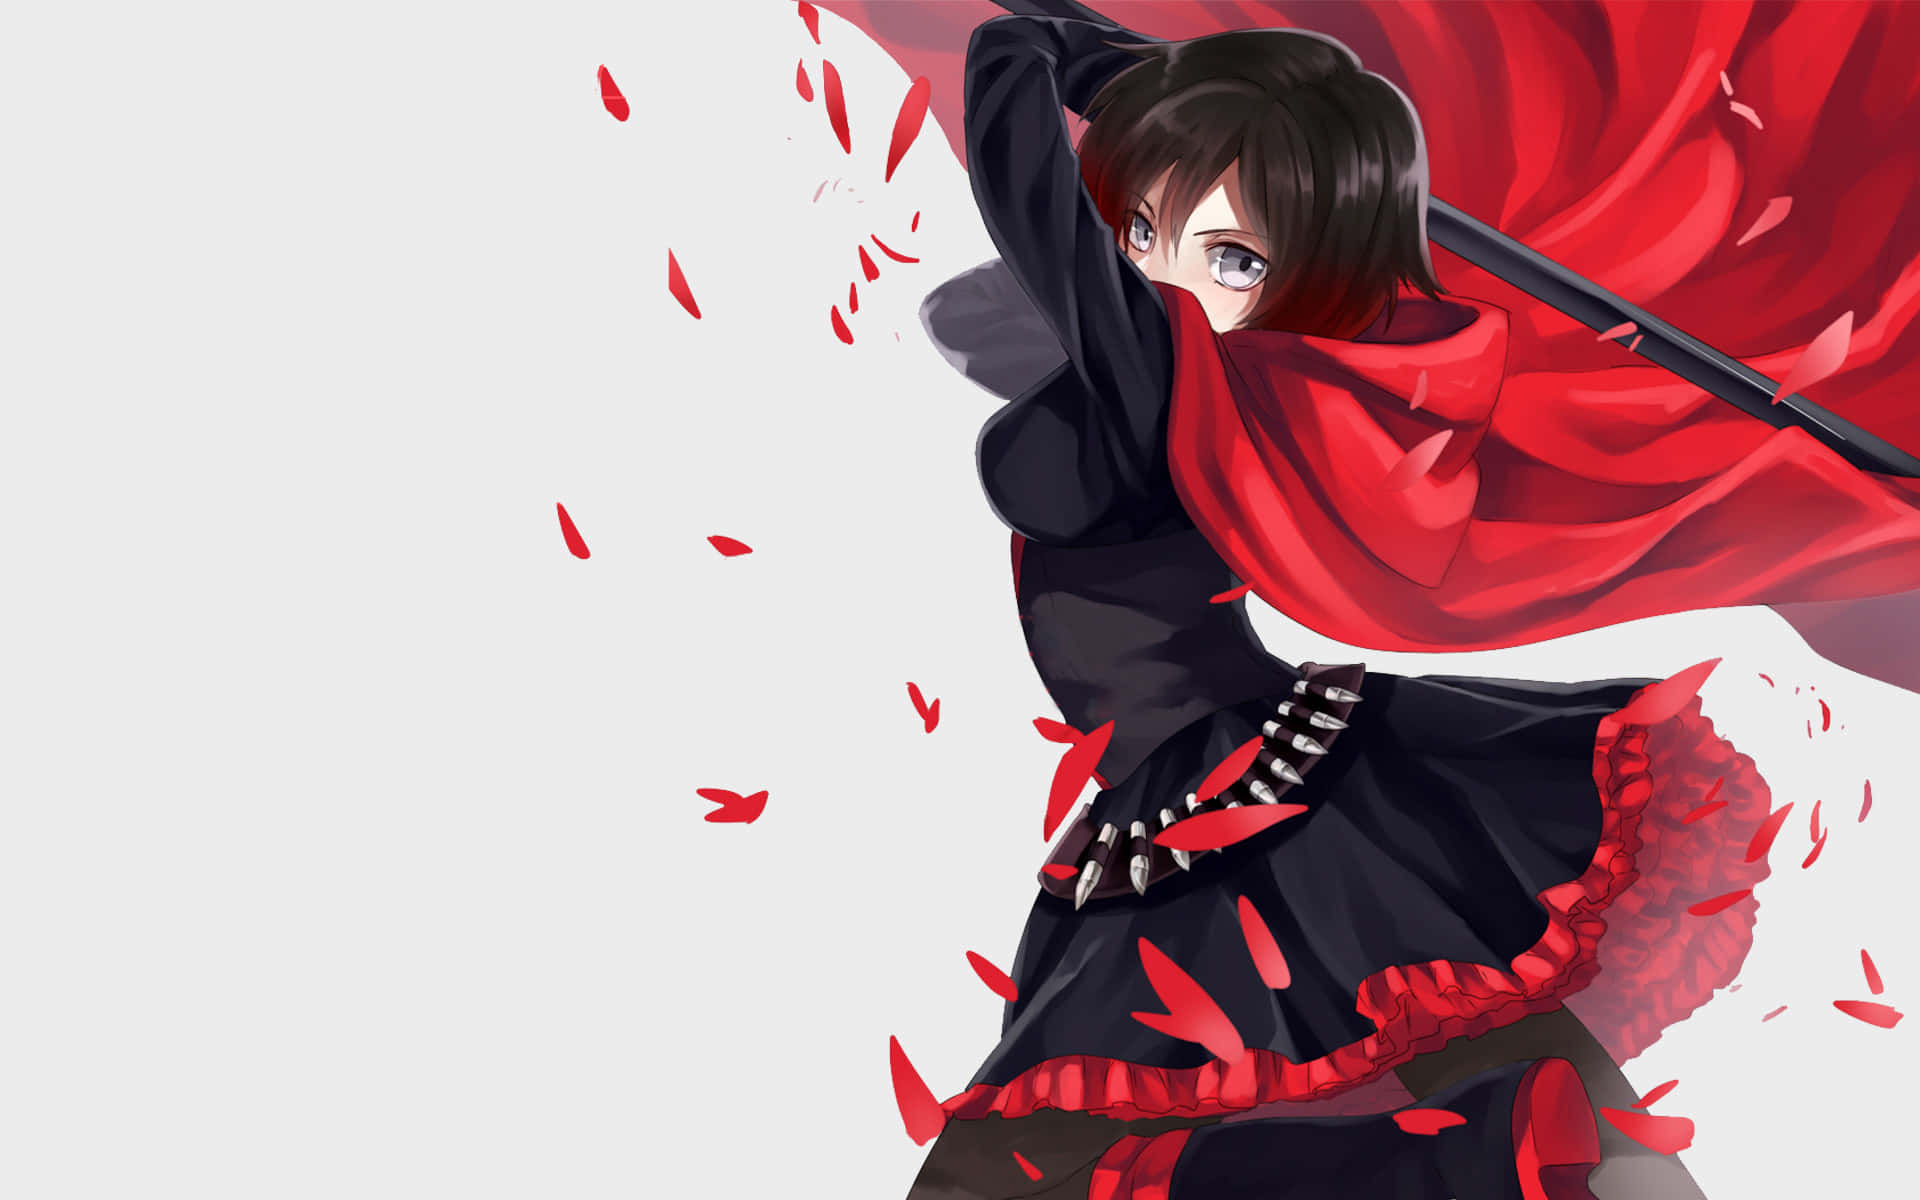 Anime pige med rød kappe og sværd.